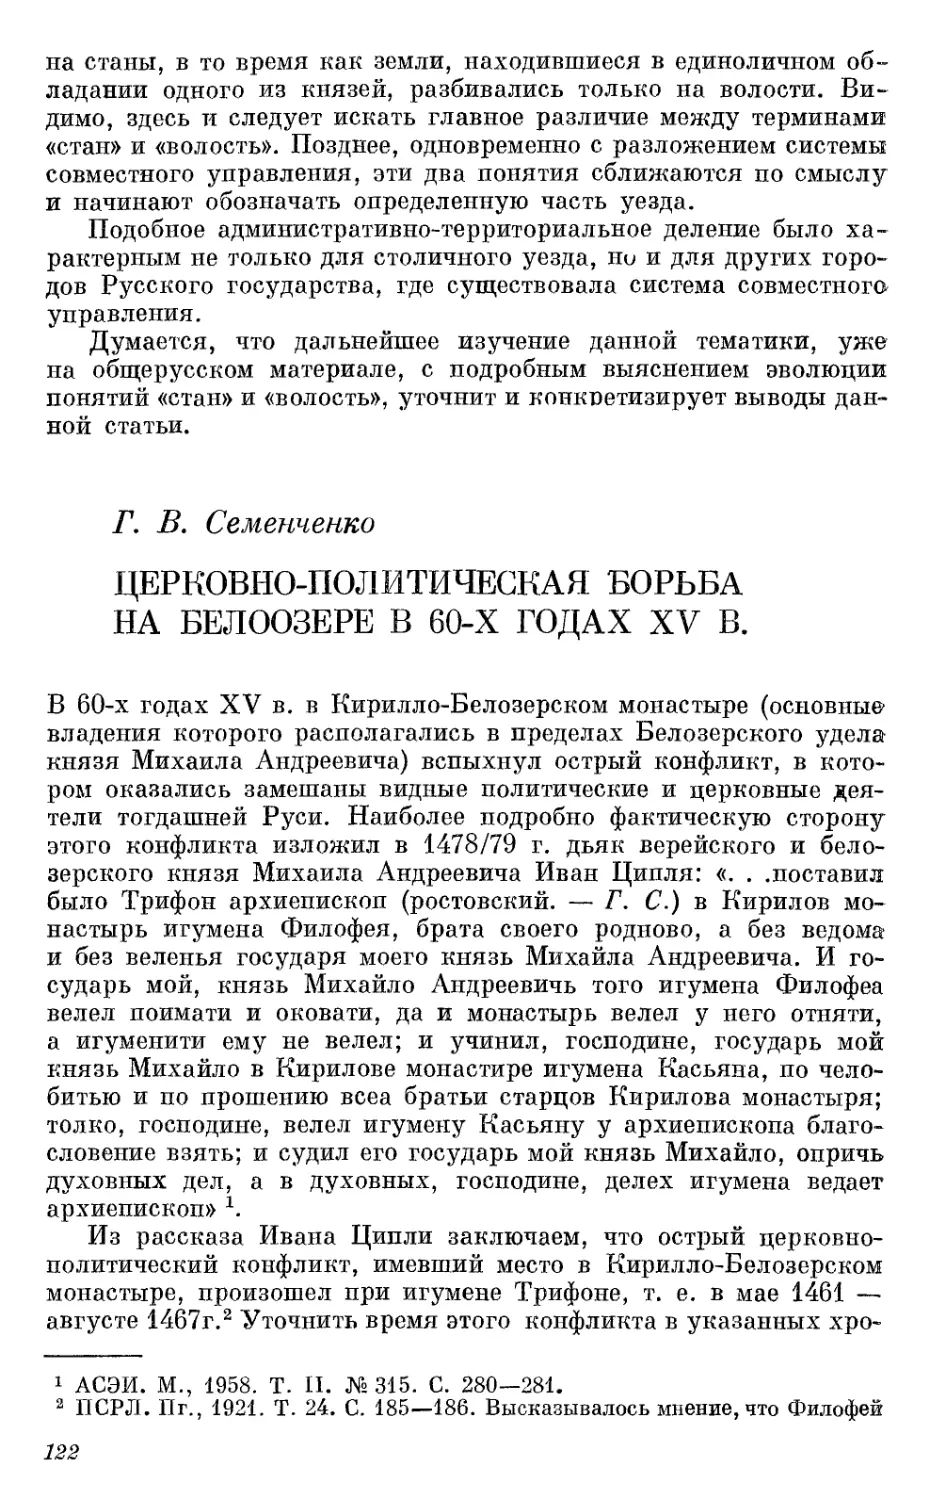 Семенченко Г.В. Церковно-политическая борьба на Белоозере в 60-х годах XV в